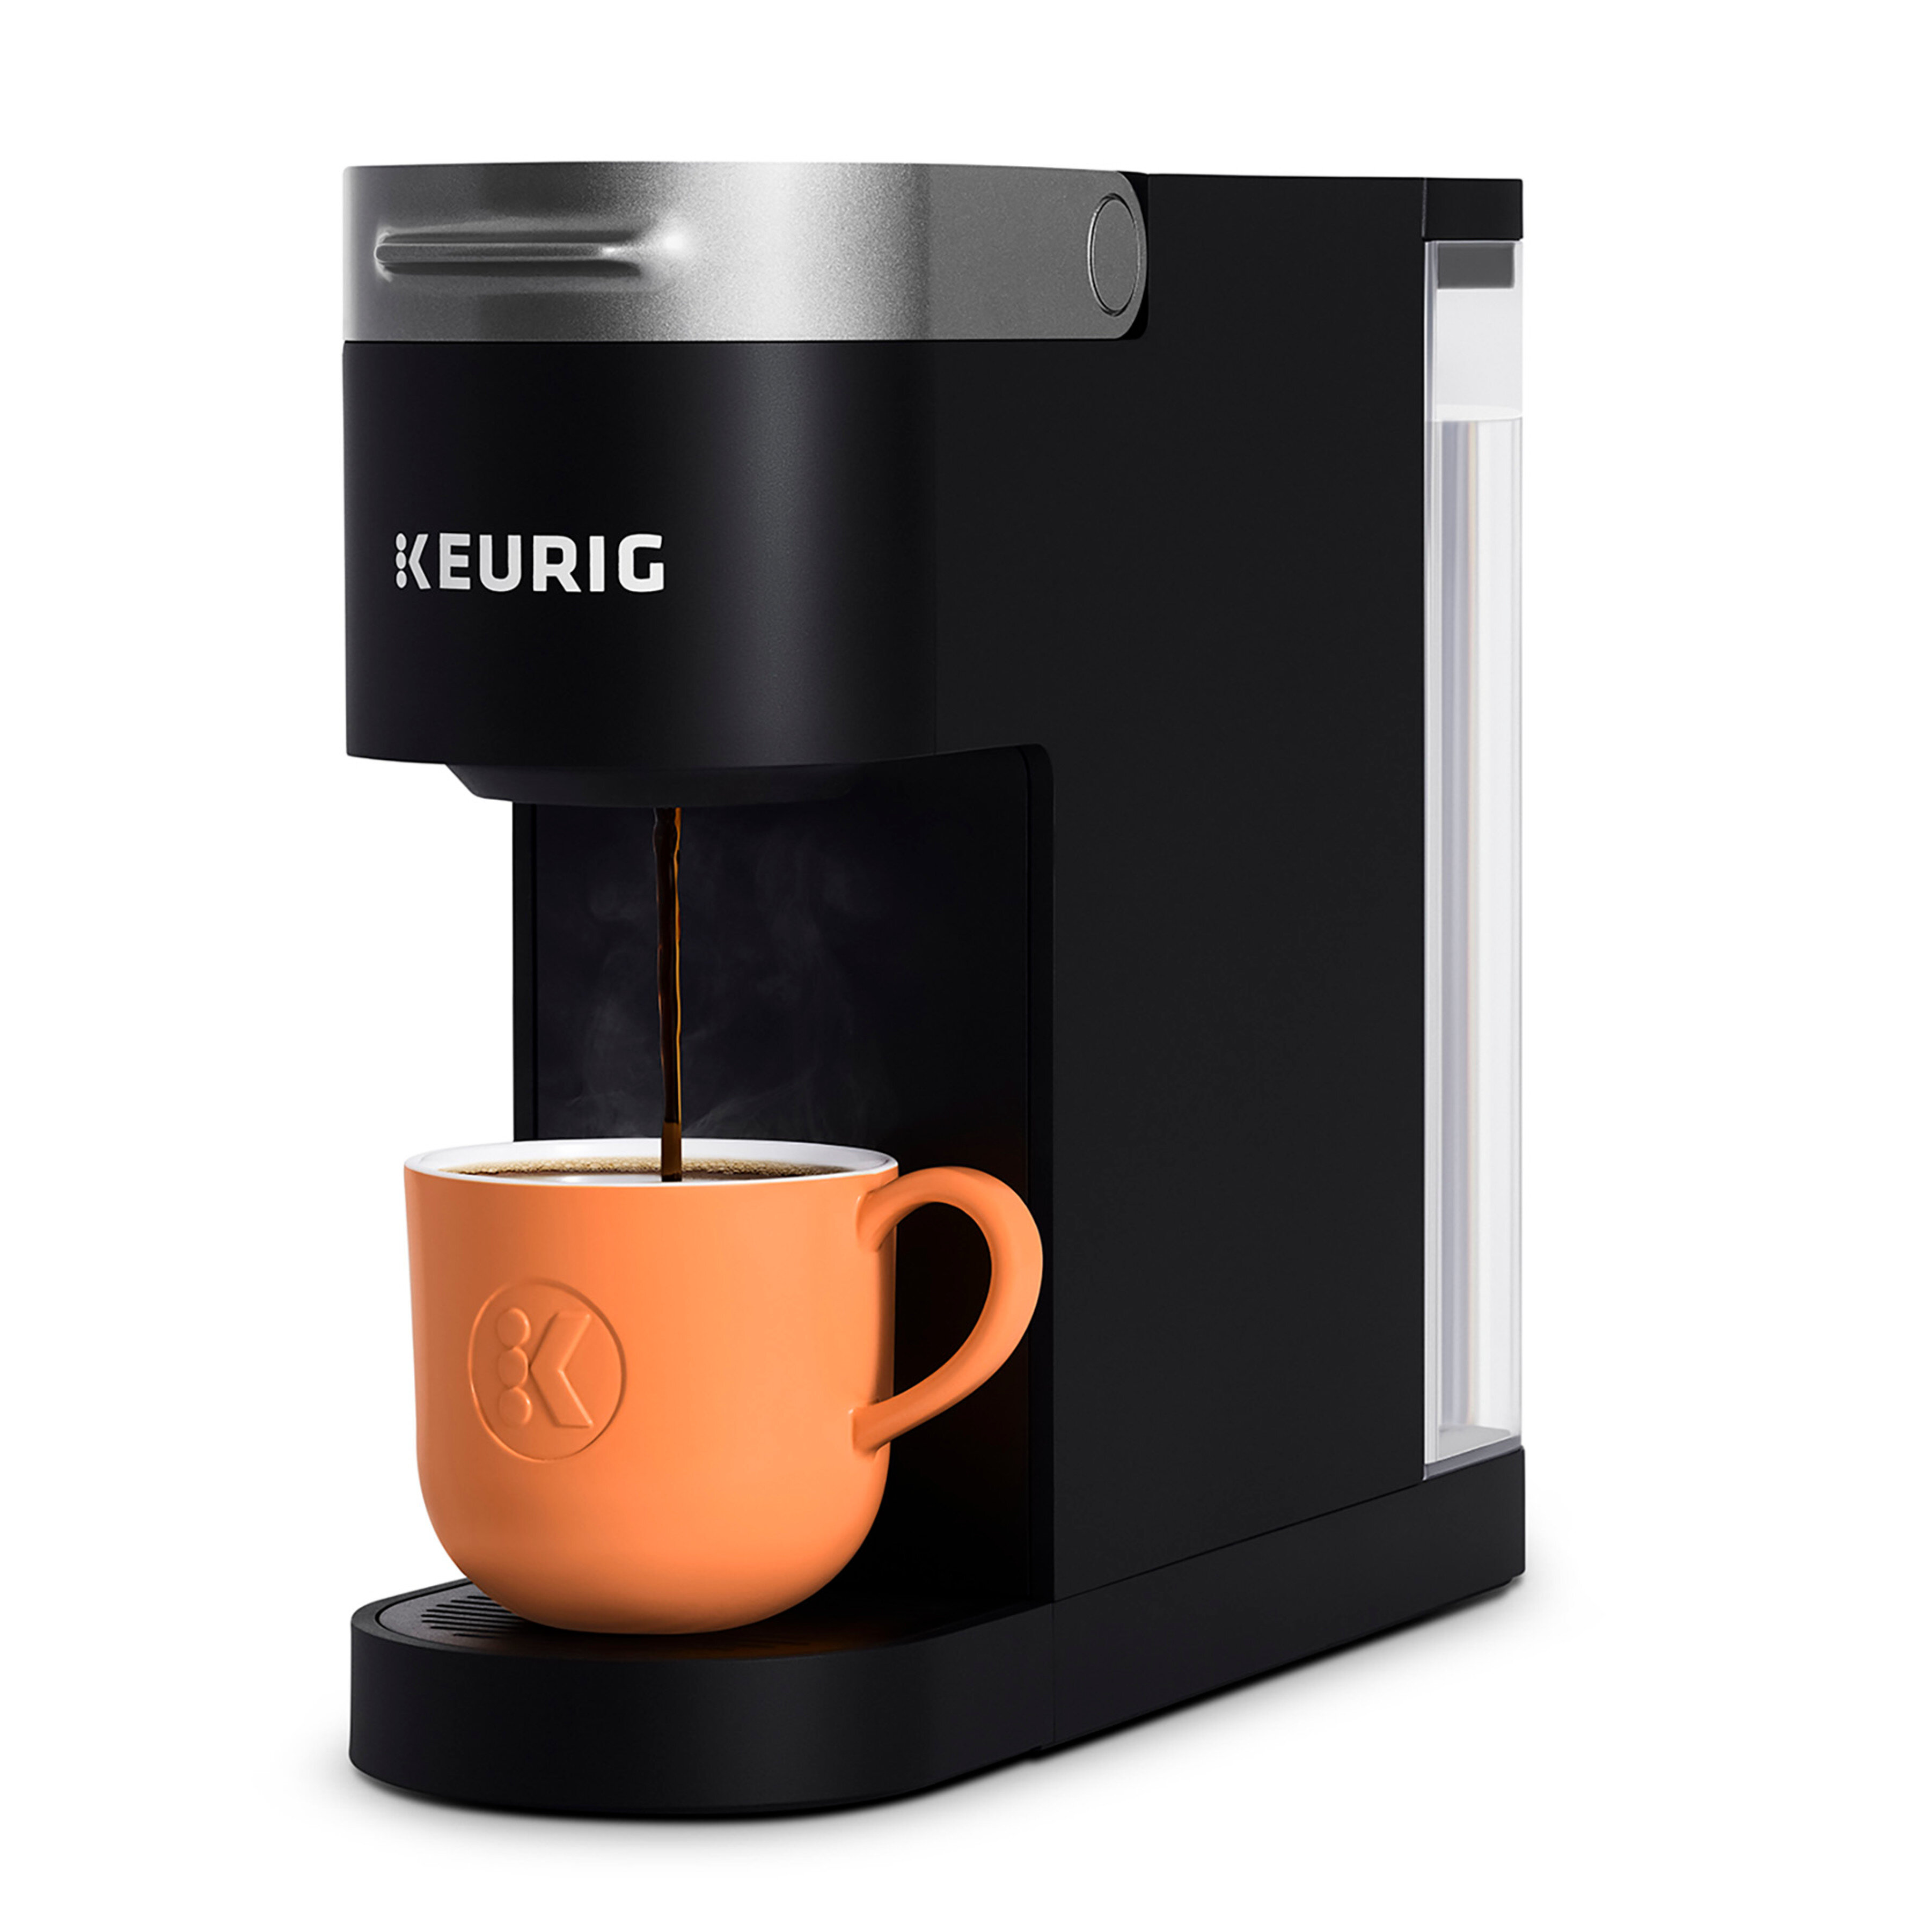 https://assets.wfcdn.com/im/78530644/compr-r85/1401/140165689/keurig-k-slim-single-serve-k-cup-pod-coffee-maker-multistream-technology.jpg